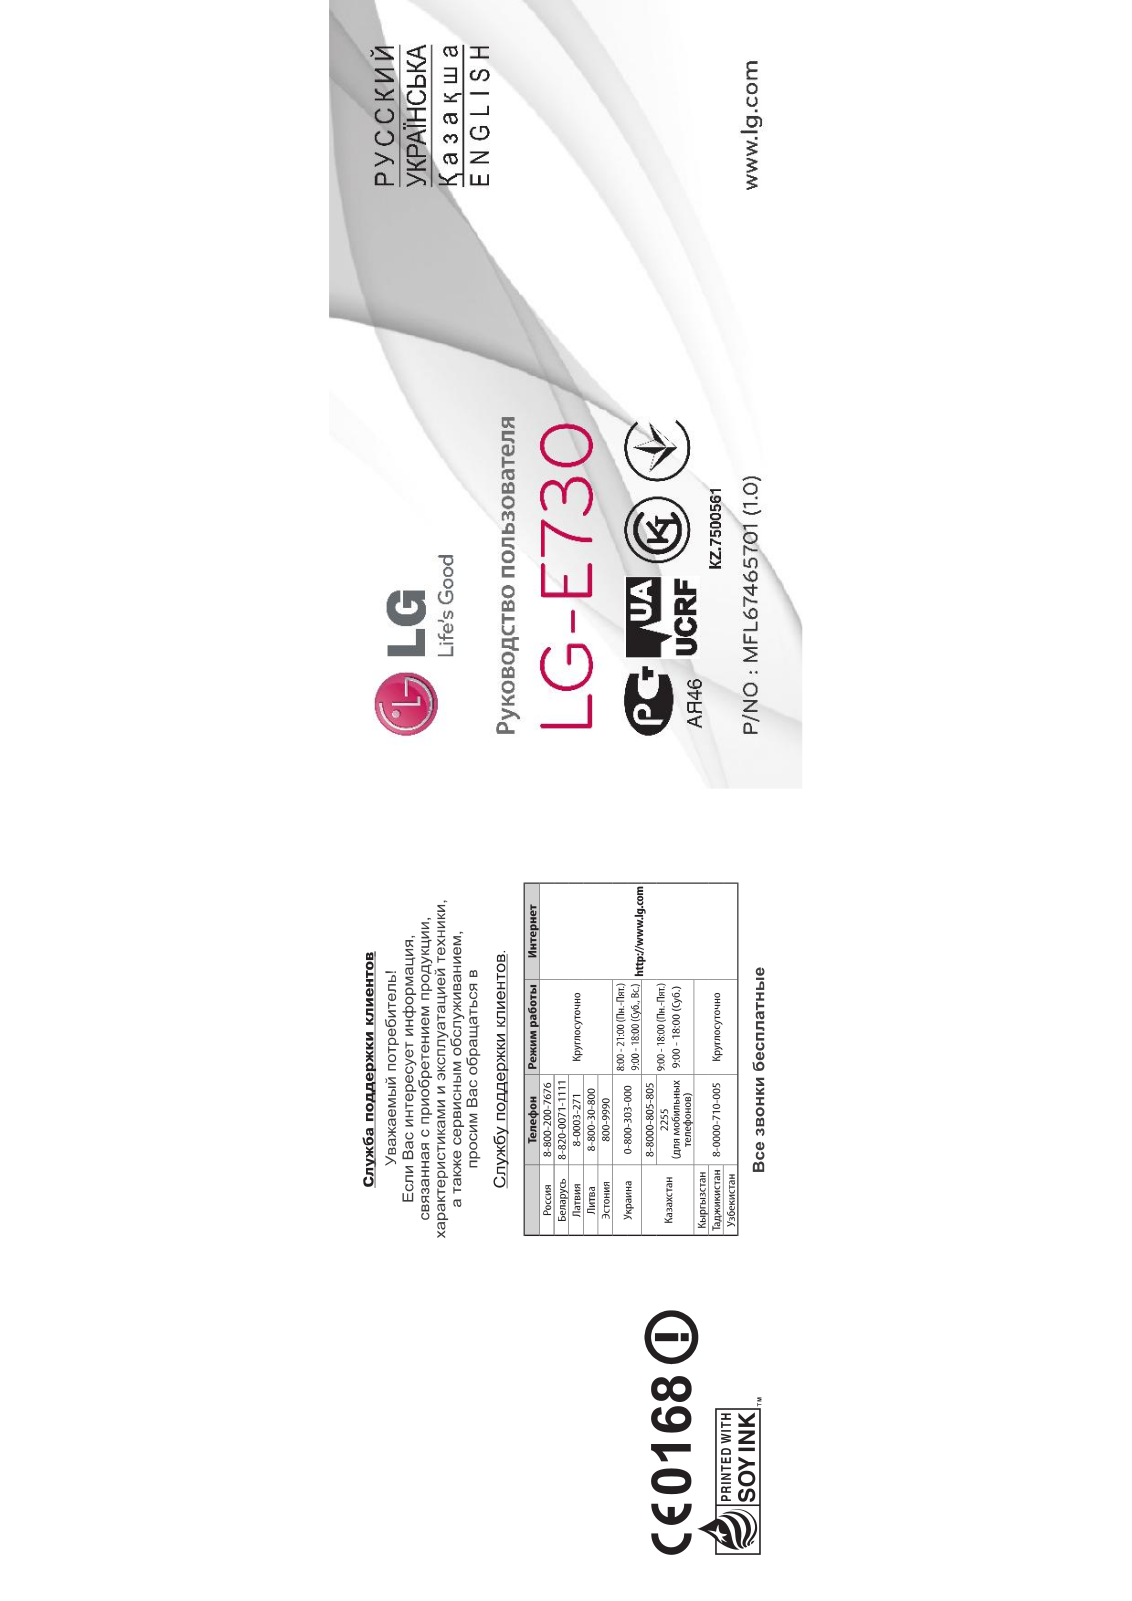 LG E730 User Manual